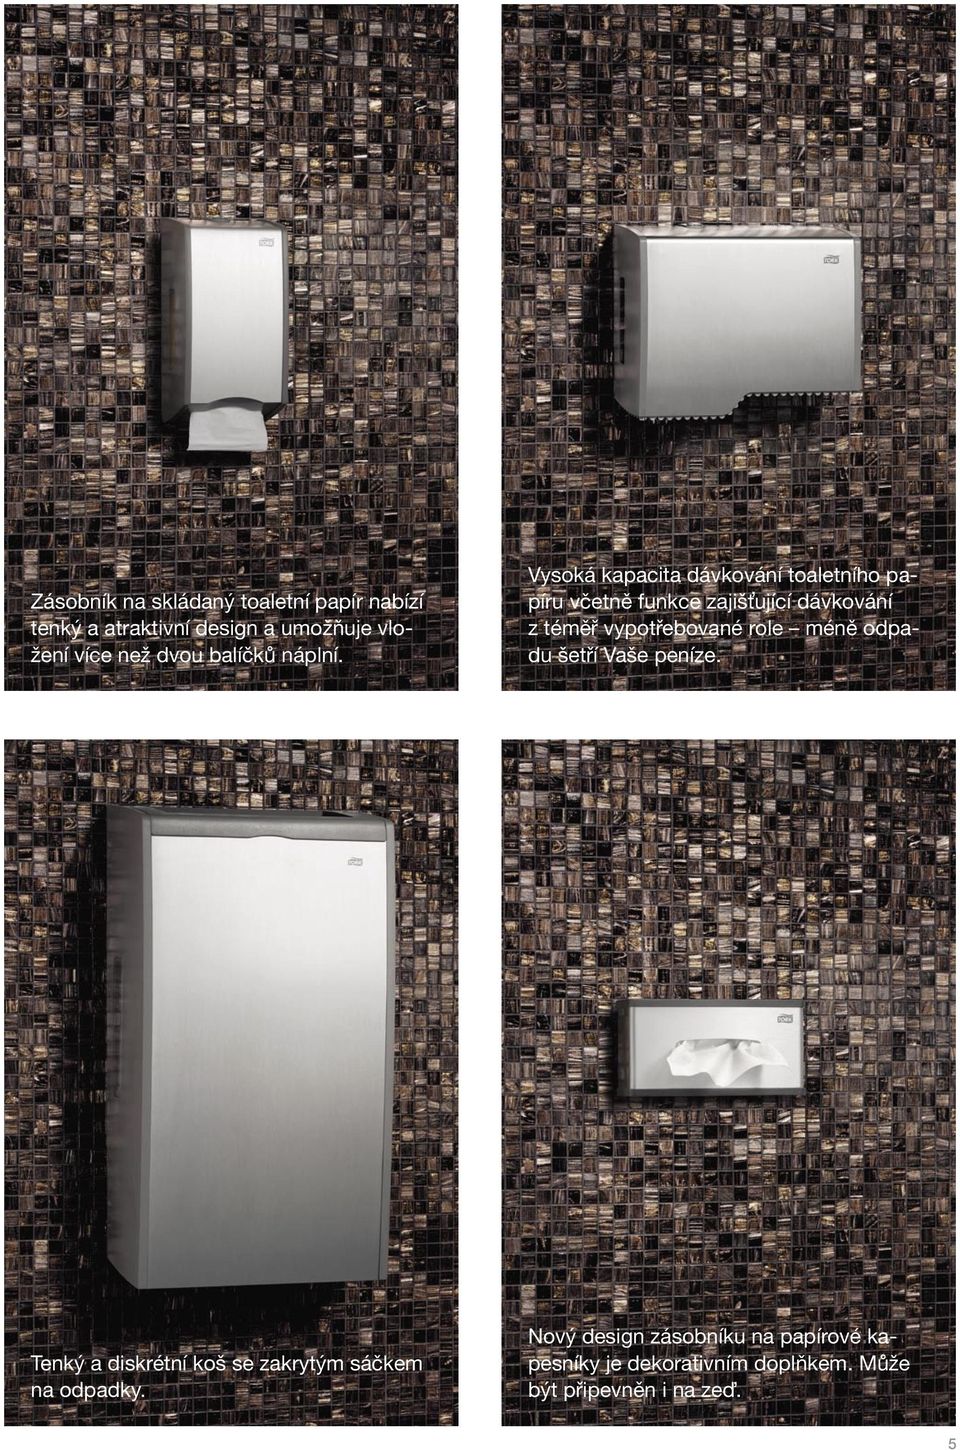 Vysoká kapacita dávkování toaletního papíru včetně funkce zajišťující dávkování z téměř vypotřebované